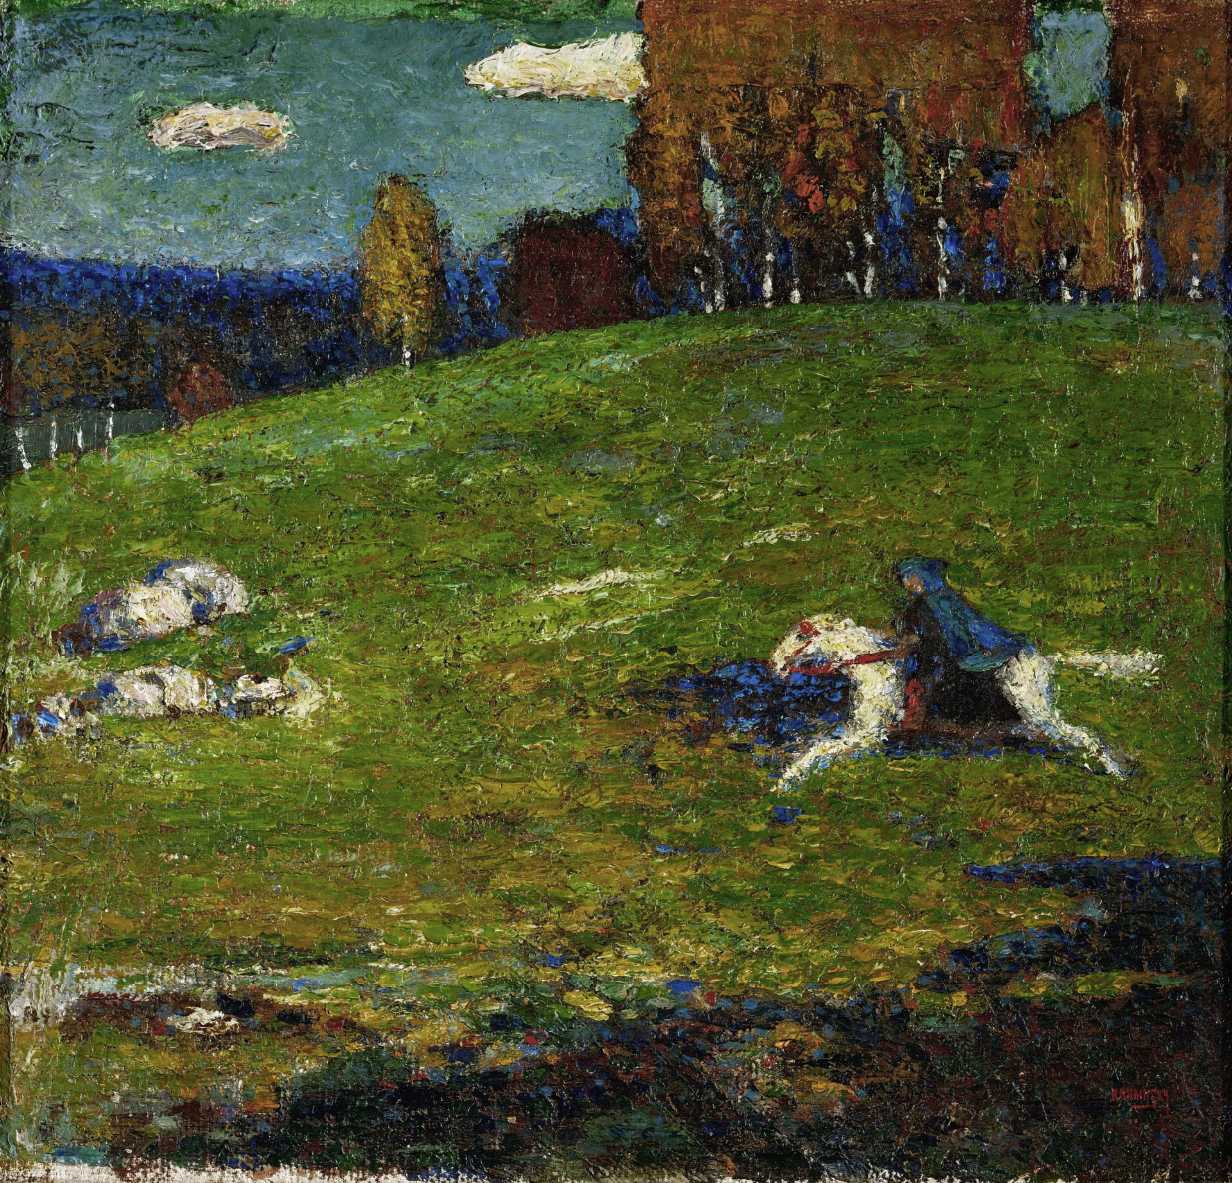 Wassily Kandinsky, 1903, The Blue Rider (Der Blaue Reiter)